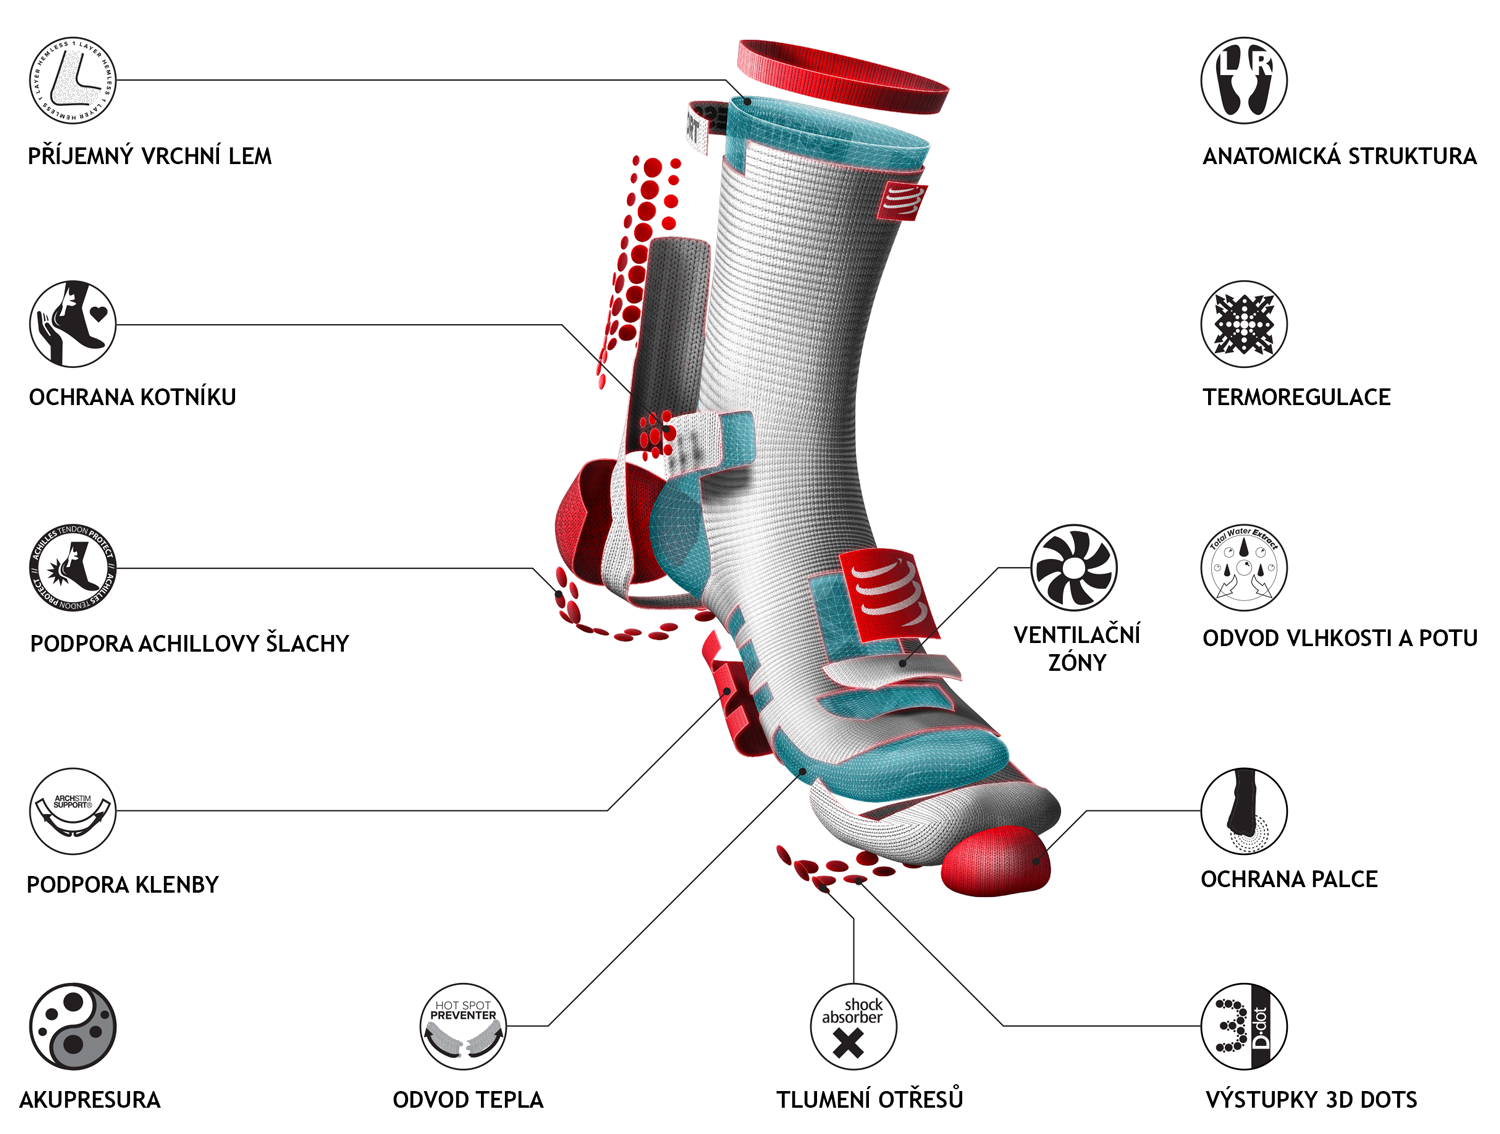 Popis klíčových vlastností ponožek - lemy, ventilační pruhy, měkké zakončení špiček a další vychytávky.